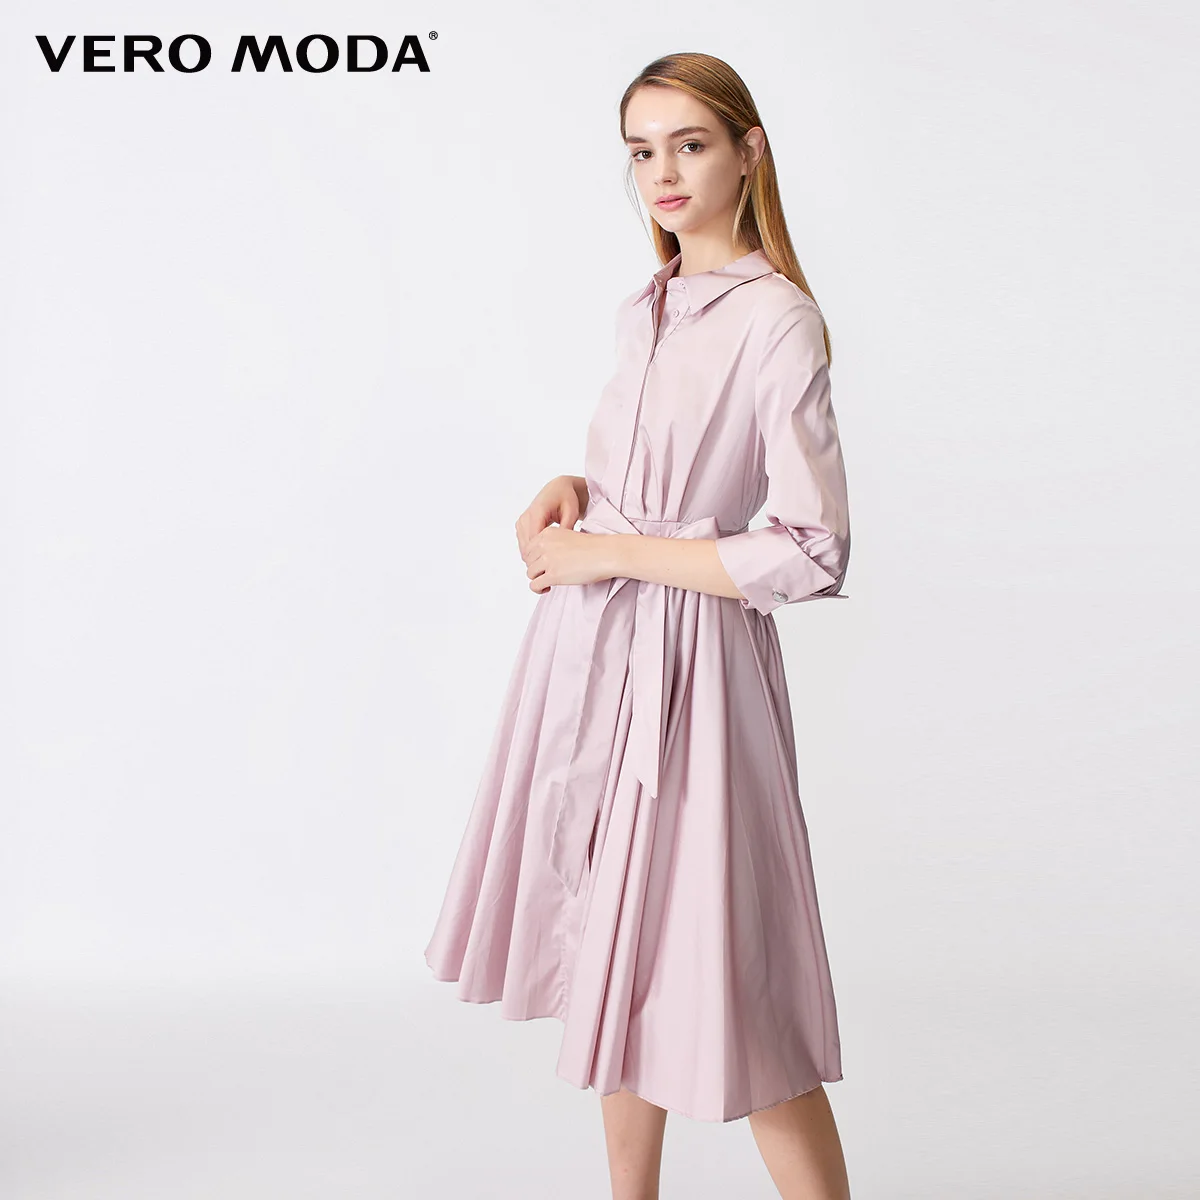 Visiter la boutique Vero ModaVero Moda Robe Femme 